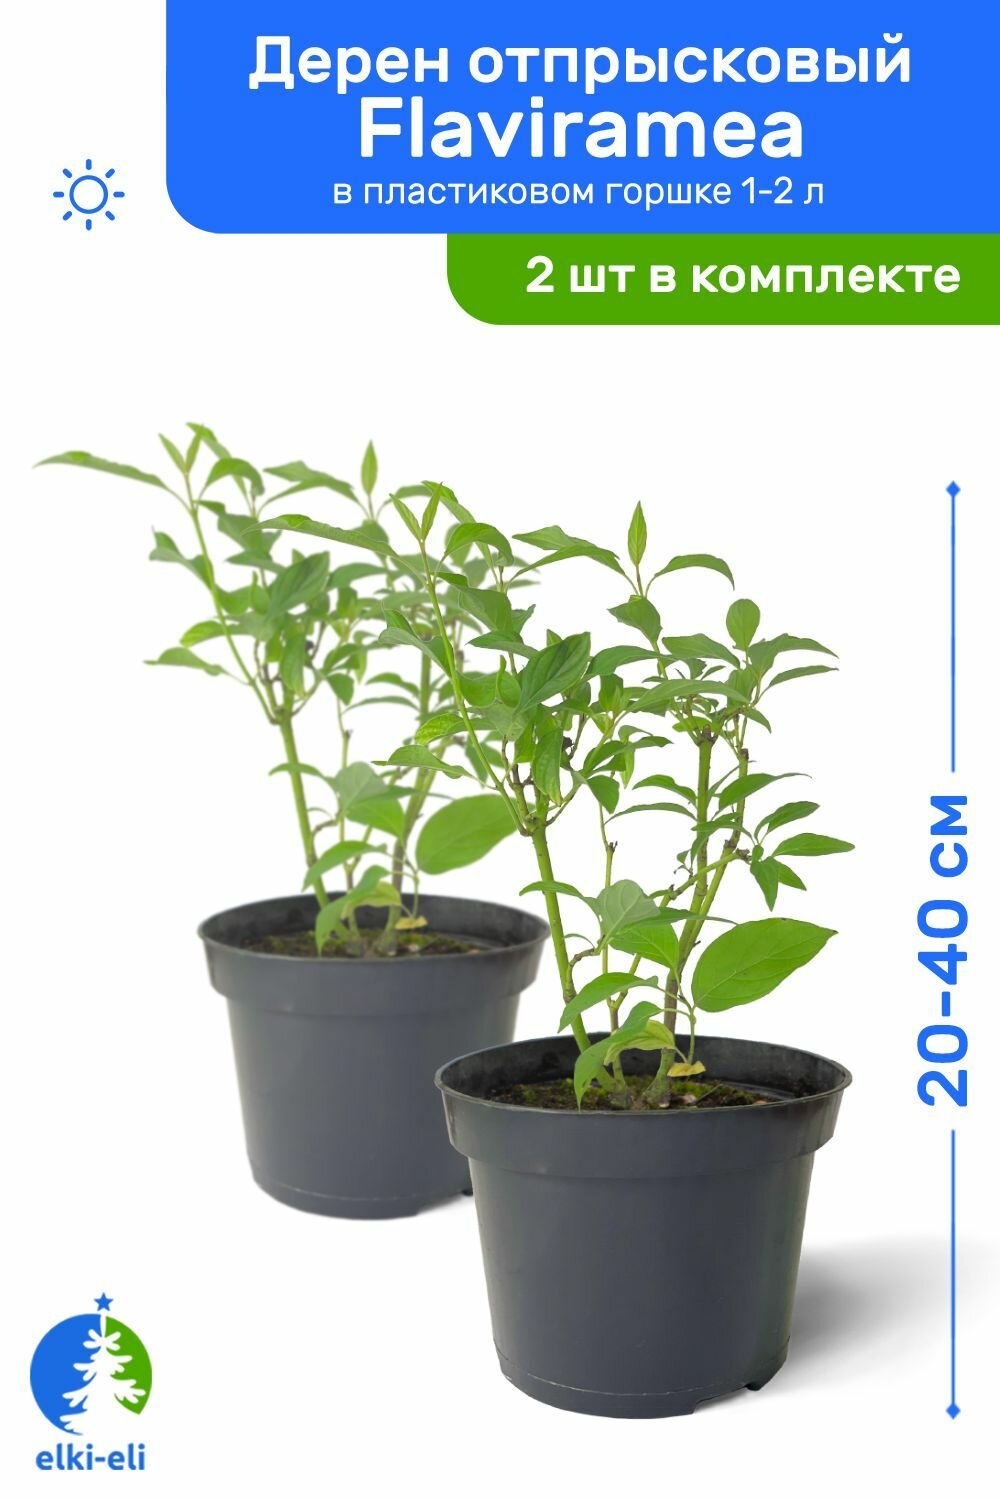 Дерен отпрысковый Flaviramea (Флавирамеа) 20-40 см в пластиковом горшке 1-2 л саженец лиственное живое растение комплект из 2 шт